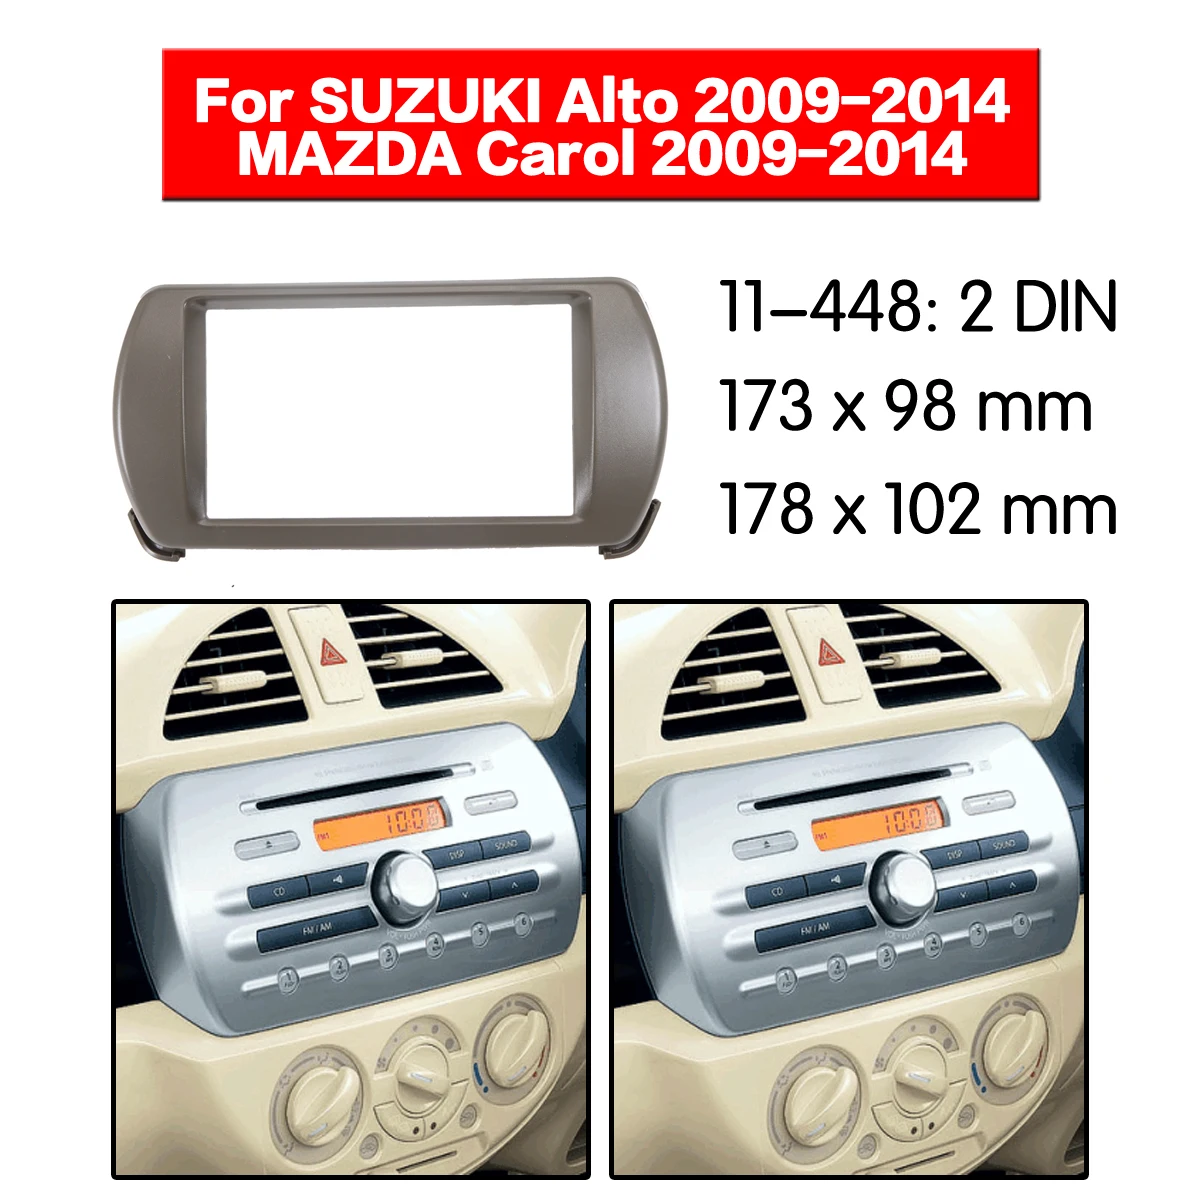 

For SUZUKI Alto HA25S/HA35S/MAZDA Carol 2009-2014 Carradio Fascias Video Player Panel Frame 2 Din Stereo Cover Frame Accessories